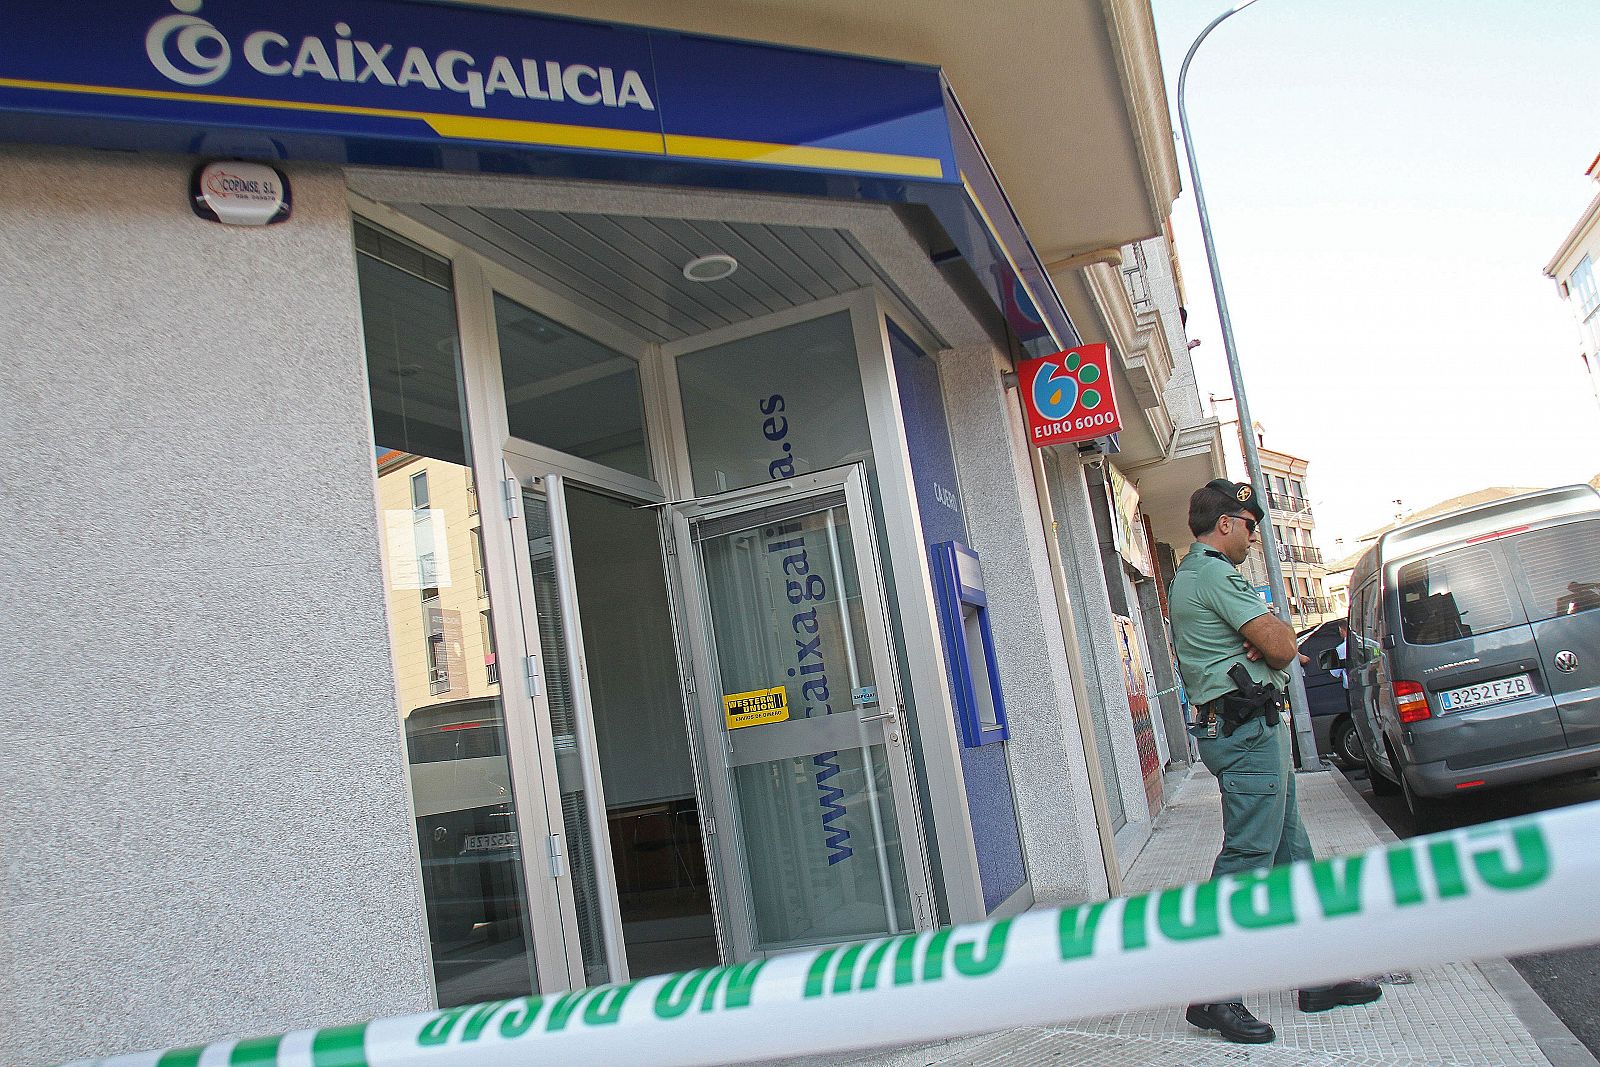 El atracador detenido en Pontevedra por un intento de asalto había estado en la cárcel "en más de una ocasión".